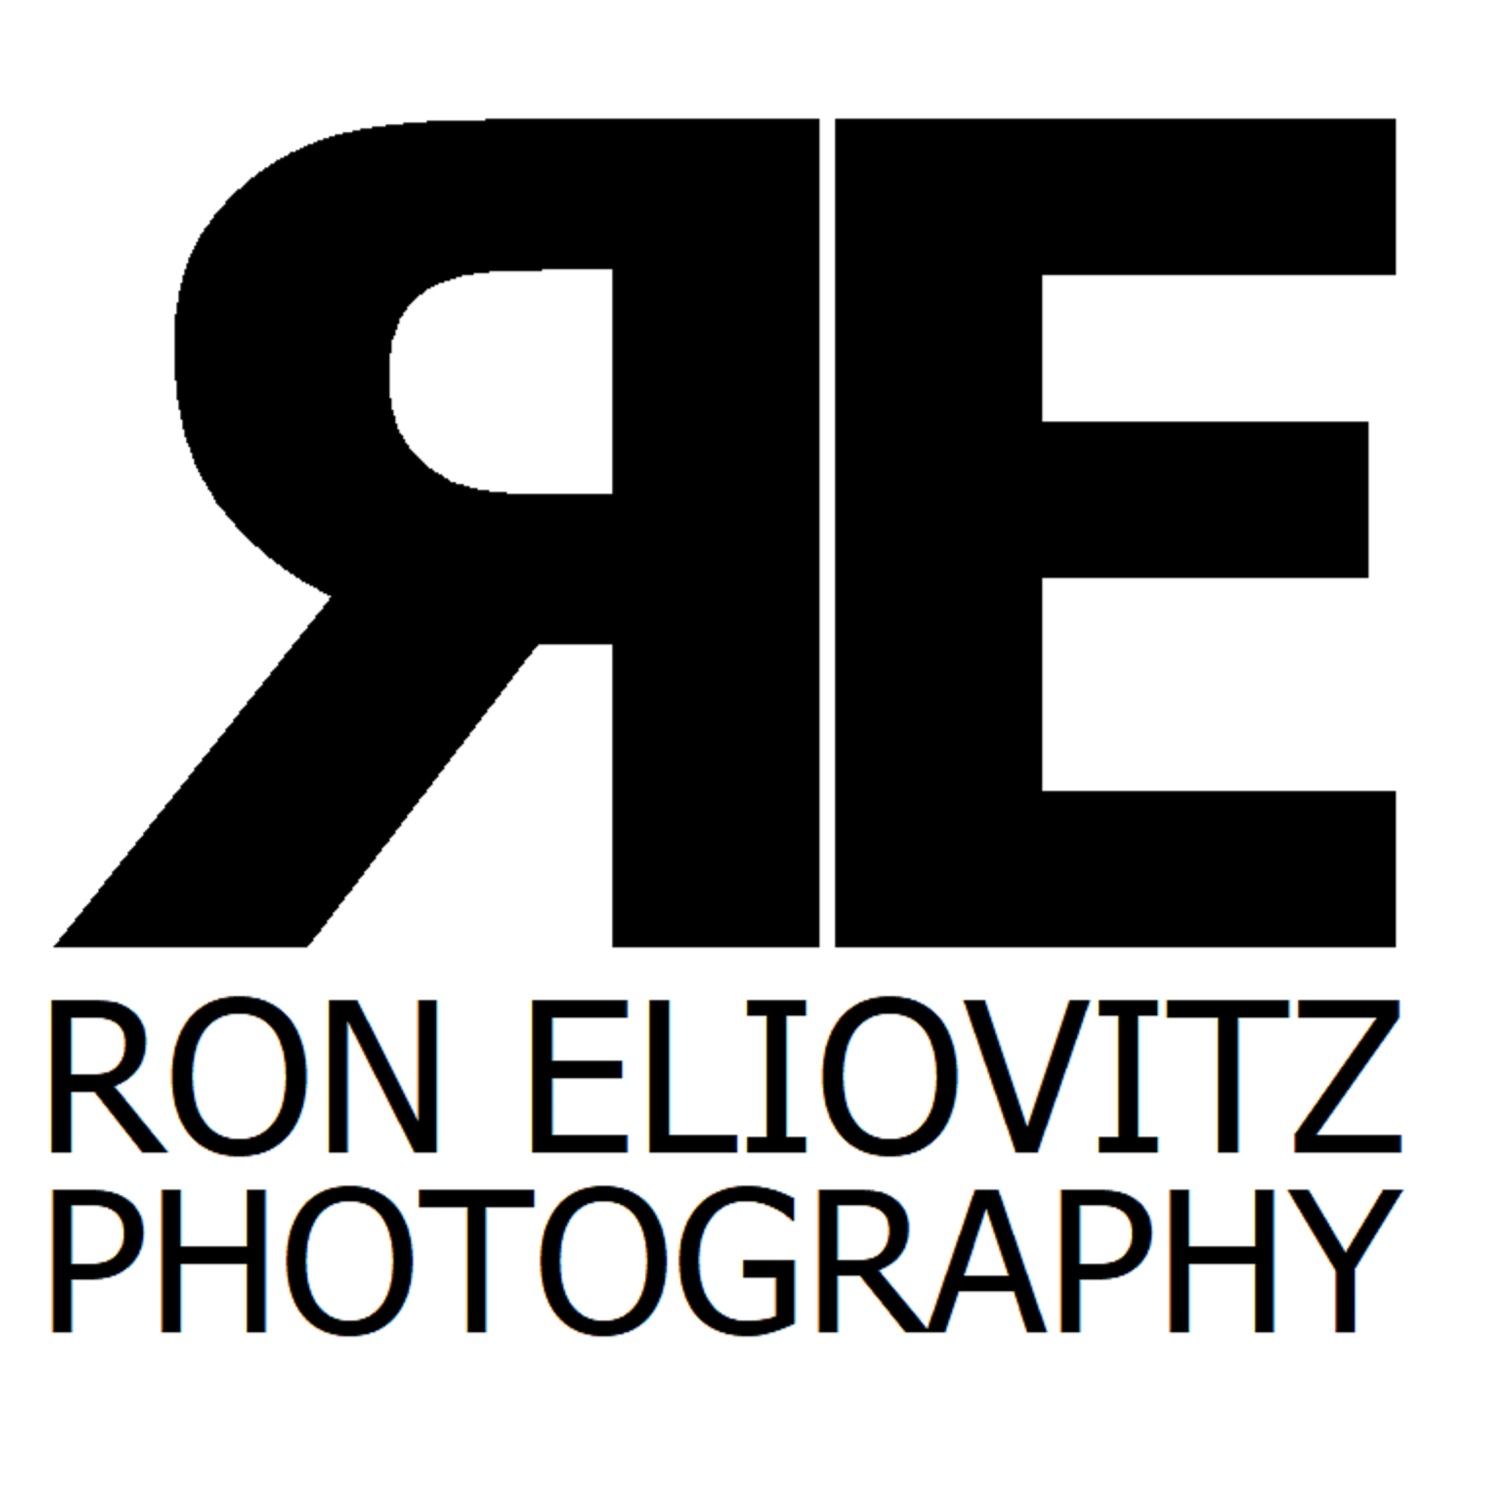 Ron Eliovitz Photography